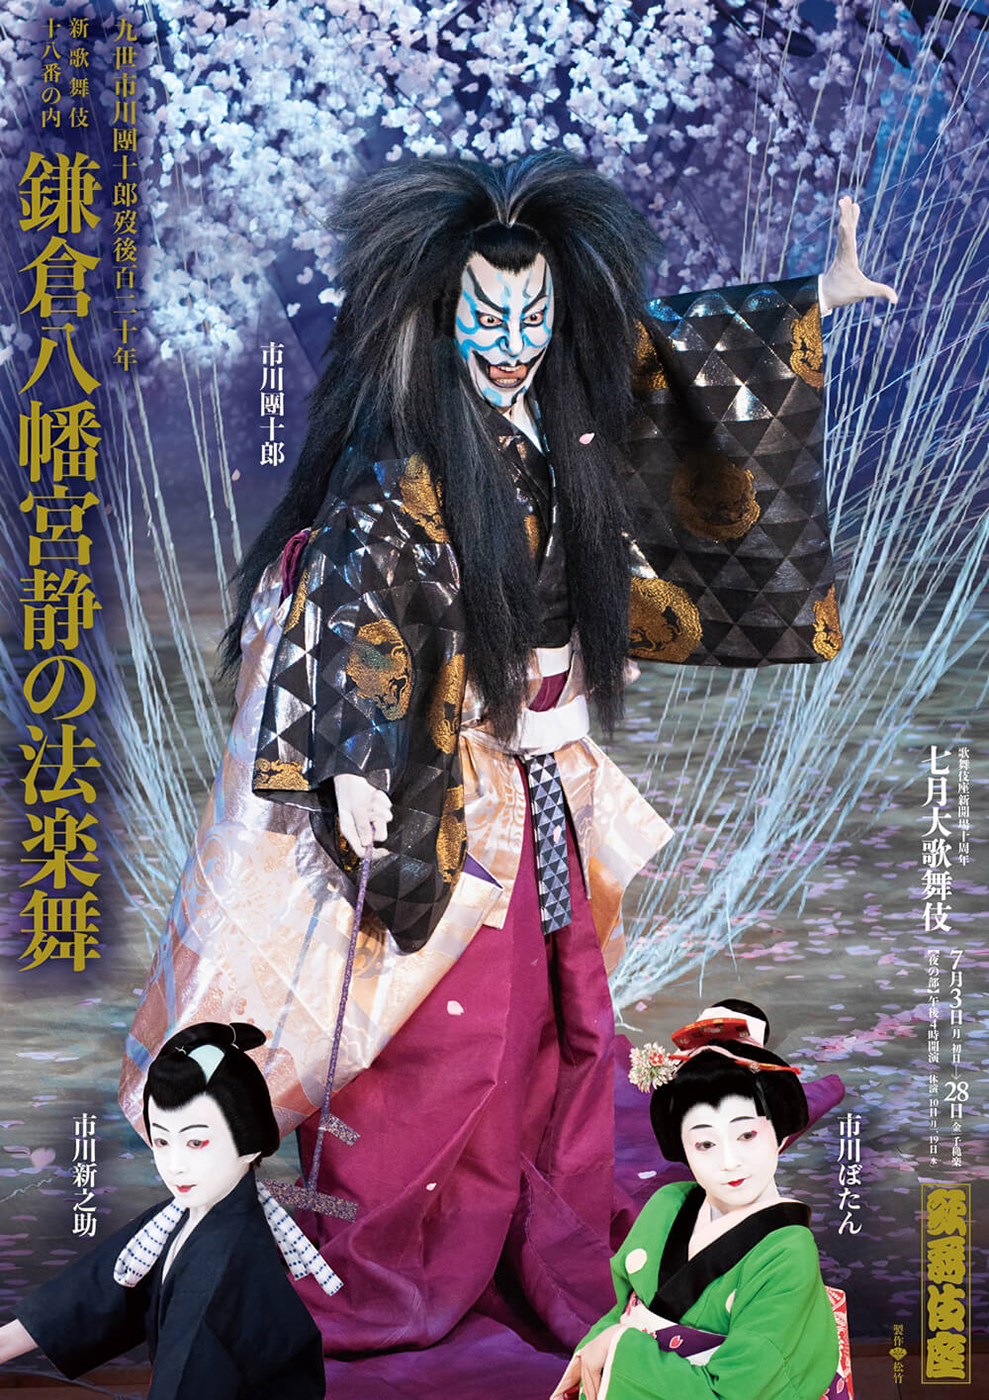 七月大歌舞伎 夜の部『鎌倉八幡宮静の法楽舞』